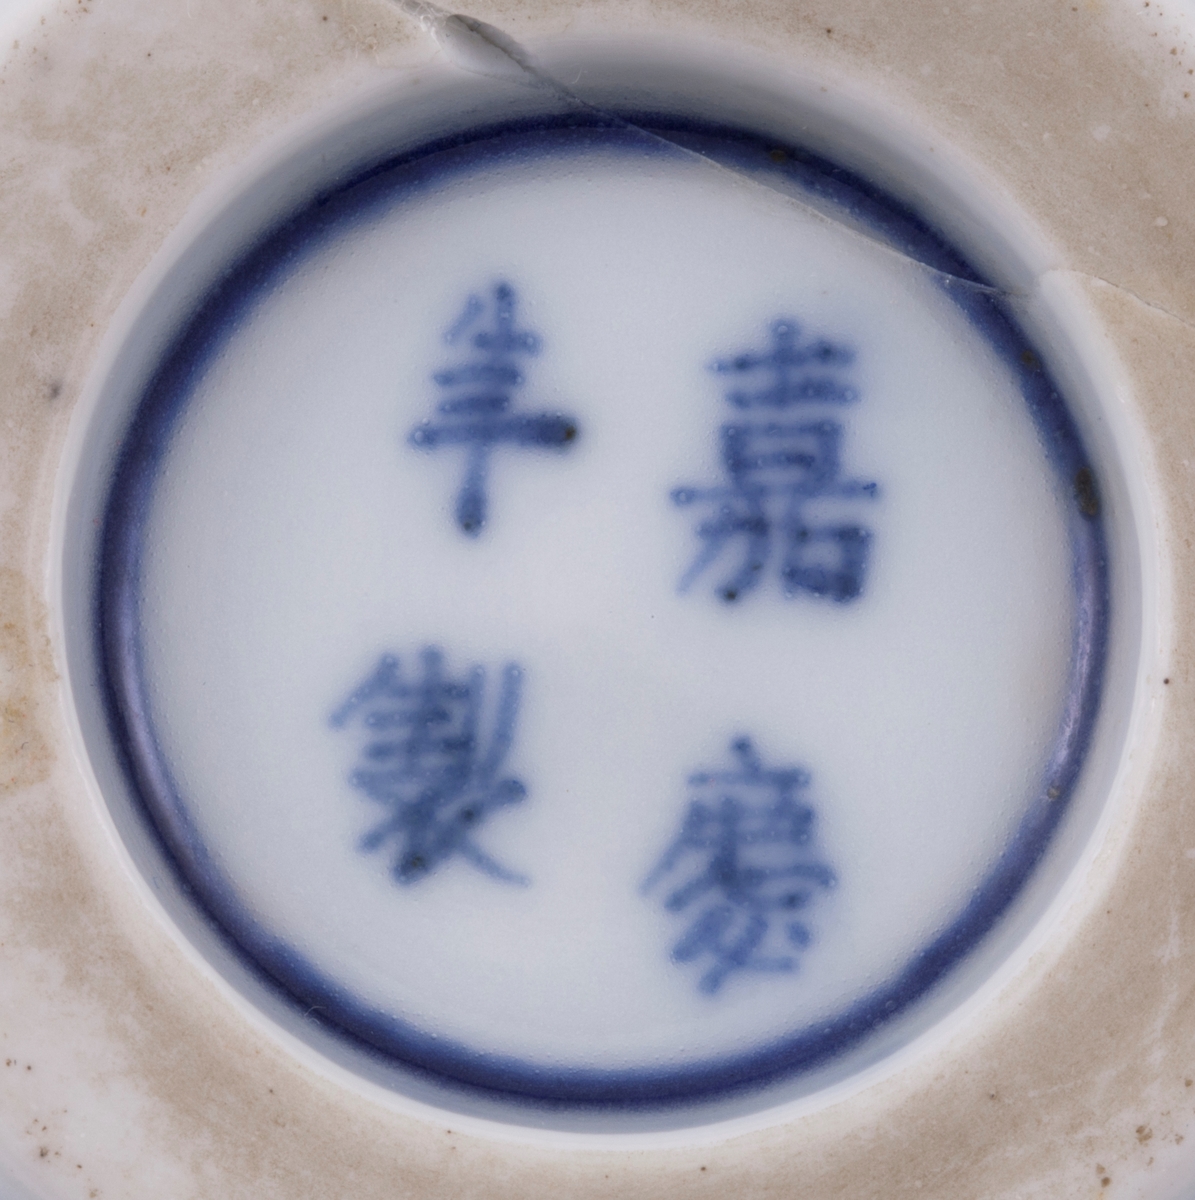 Dekorativt mønster med fire drager, to på innsiden og to på utsiden av skålen. Dragene er omsluttet av ildtunger i rød og gylden overglasur. Hovekroppen på dragene er i rød overglasur mens ryggen er i blå underglasur. Mellom dragene på innsiden av skålen er det to symboler, antageligvis buddhistiske. Symbolene ser ut som en mandorla på en sky omgitt av flammer. På speilet to ringer i dus blå underglasur med en skyformasjon i midten.